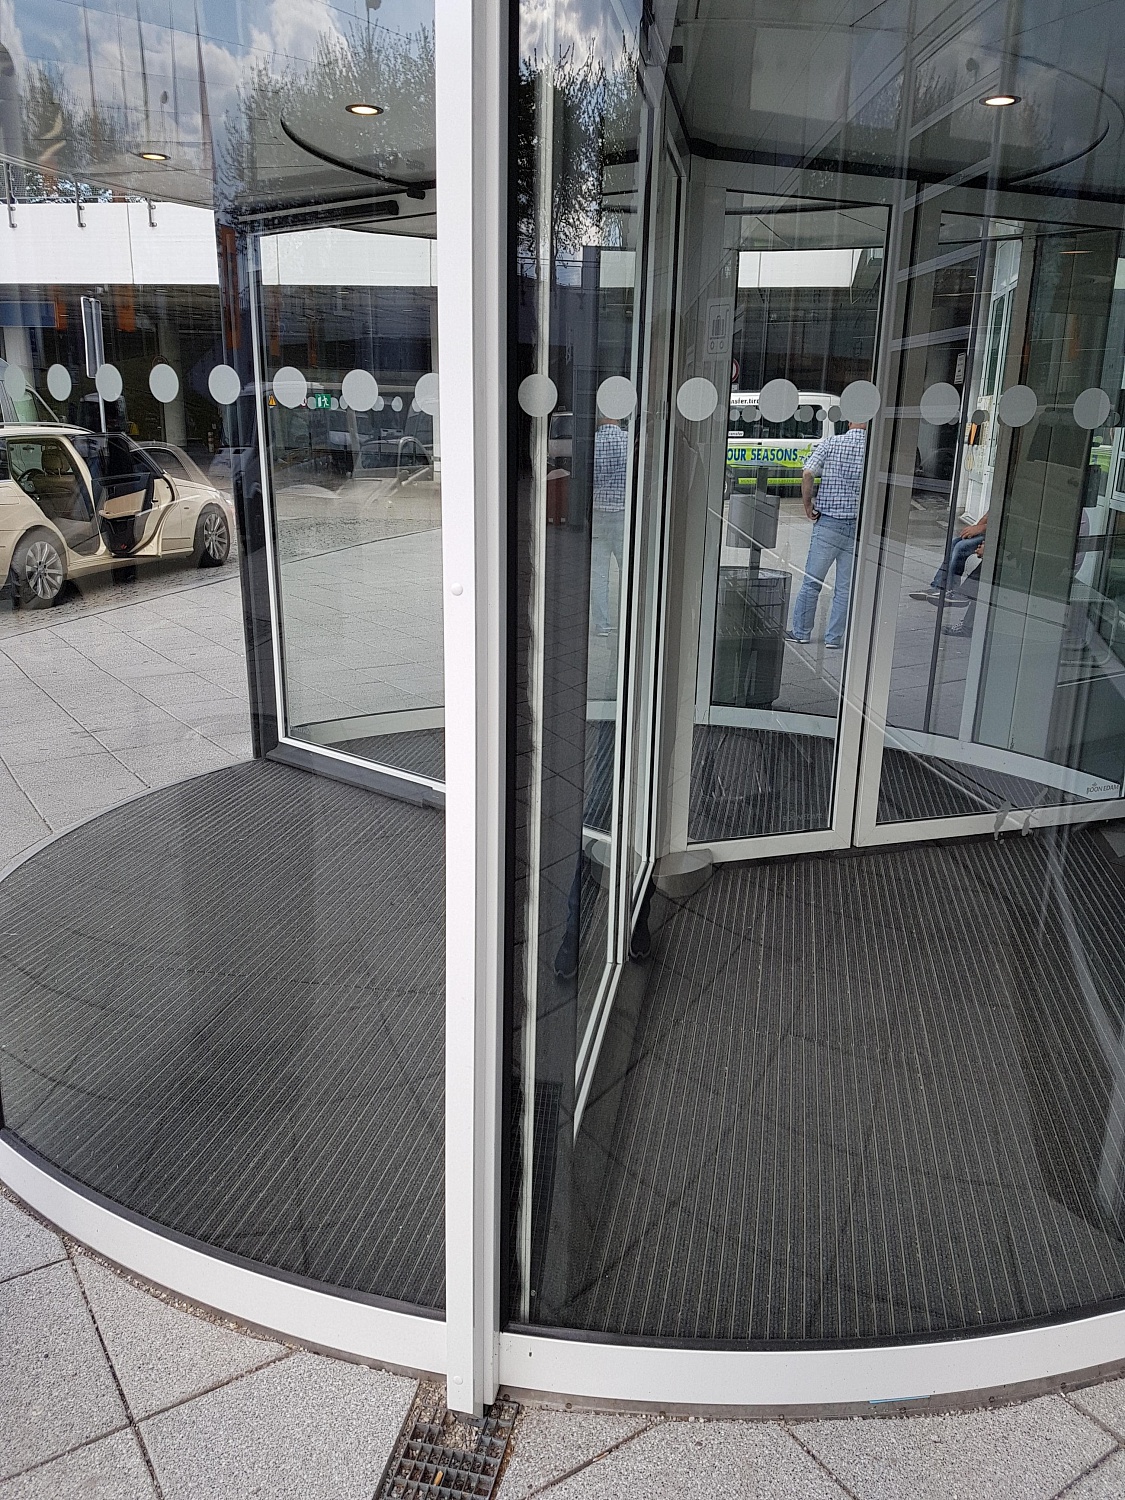 Заказать установку автоматических дверей в Ялте. Монтаж выполняется командой профессионалов с опытом работы более 9 лет. 